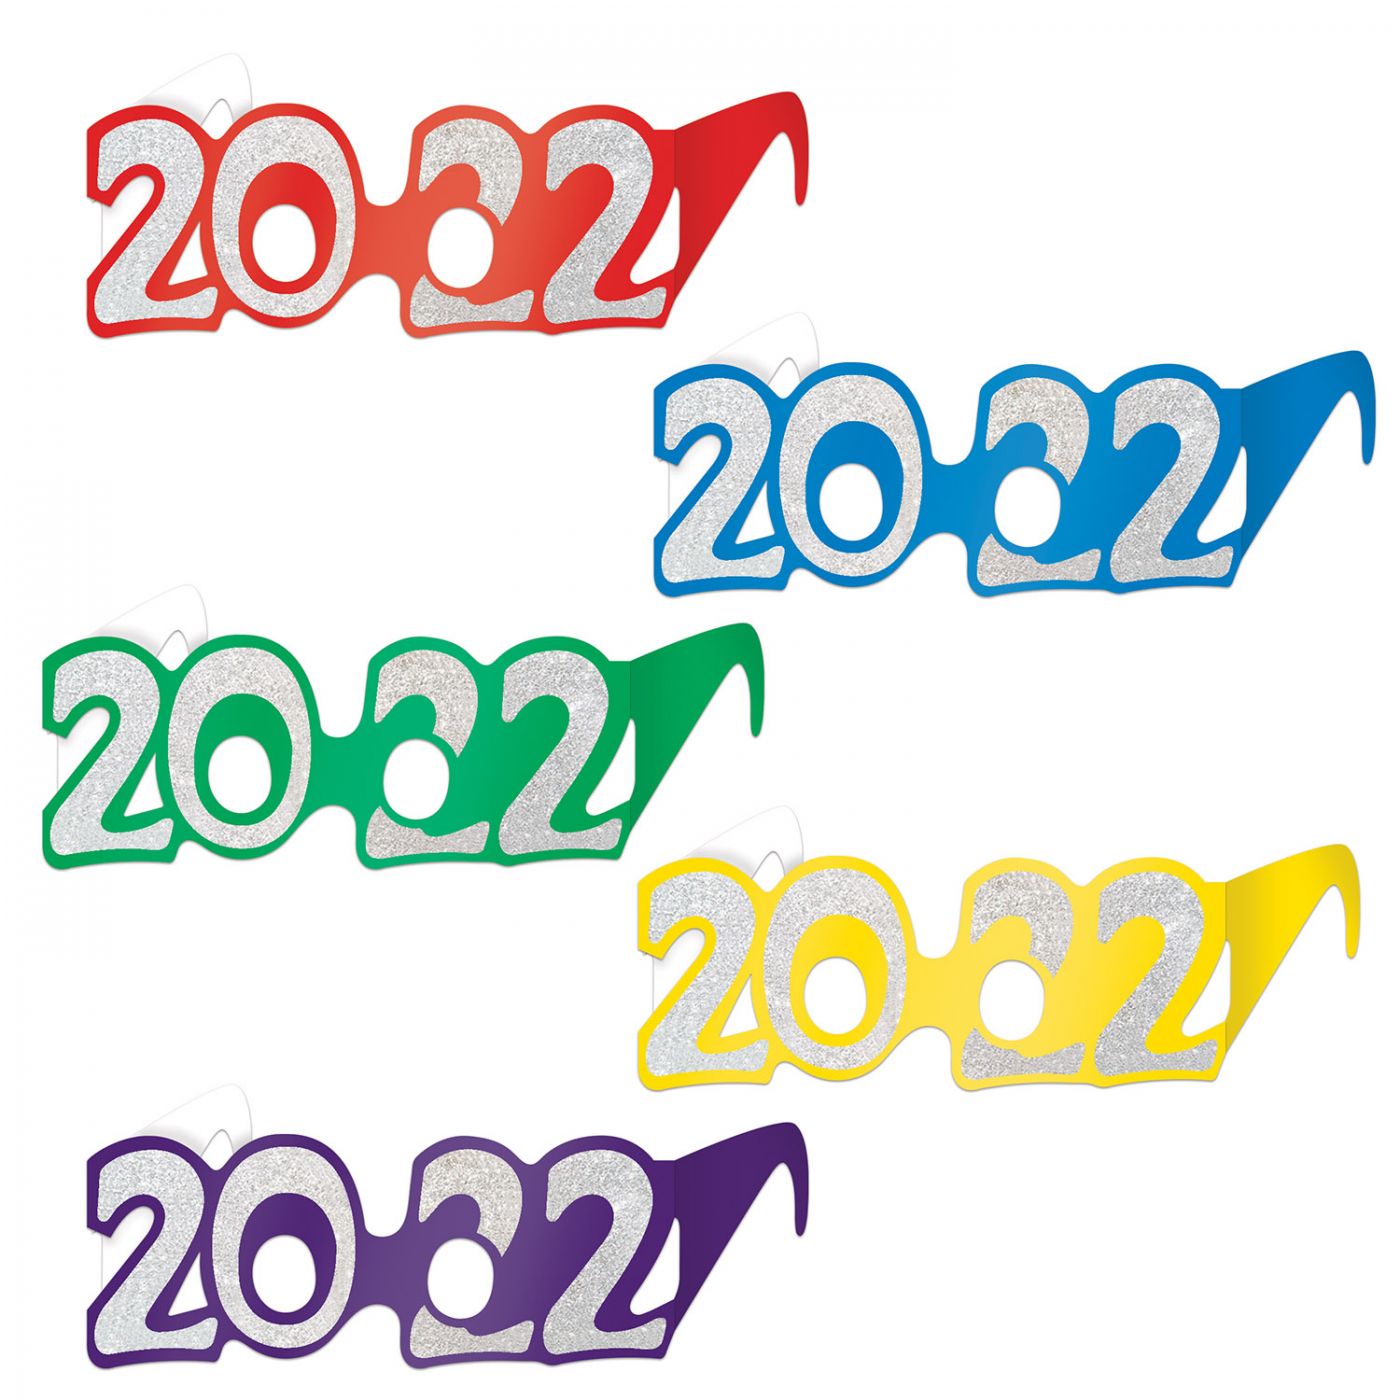  2022  Glittered Foil Eyeglasses image